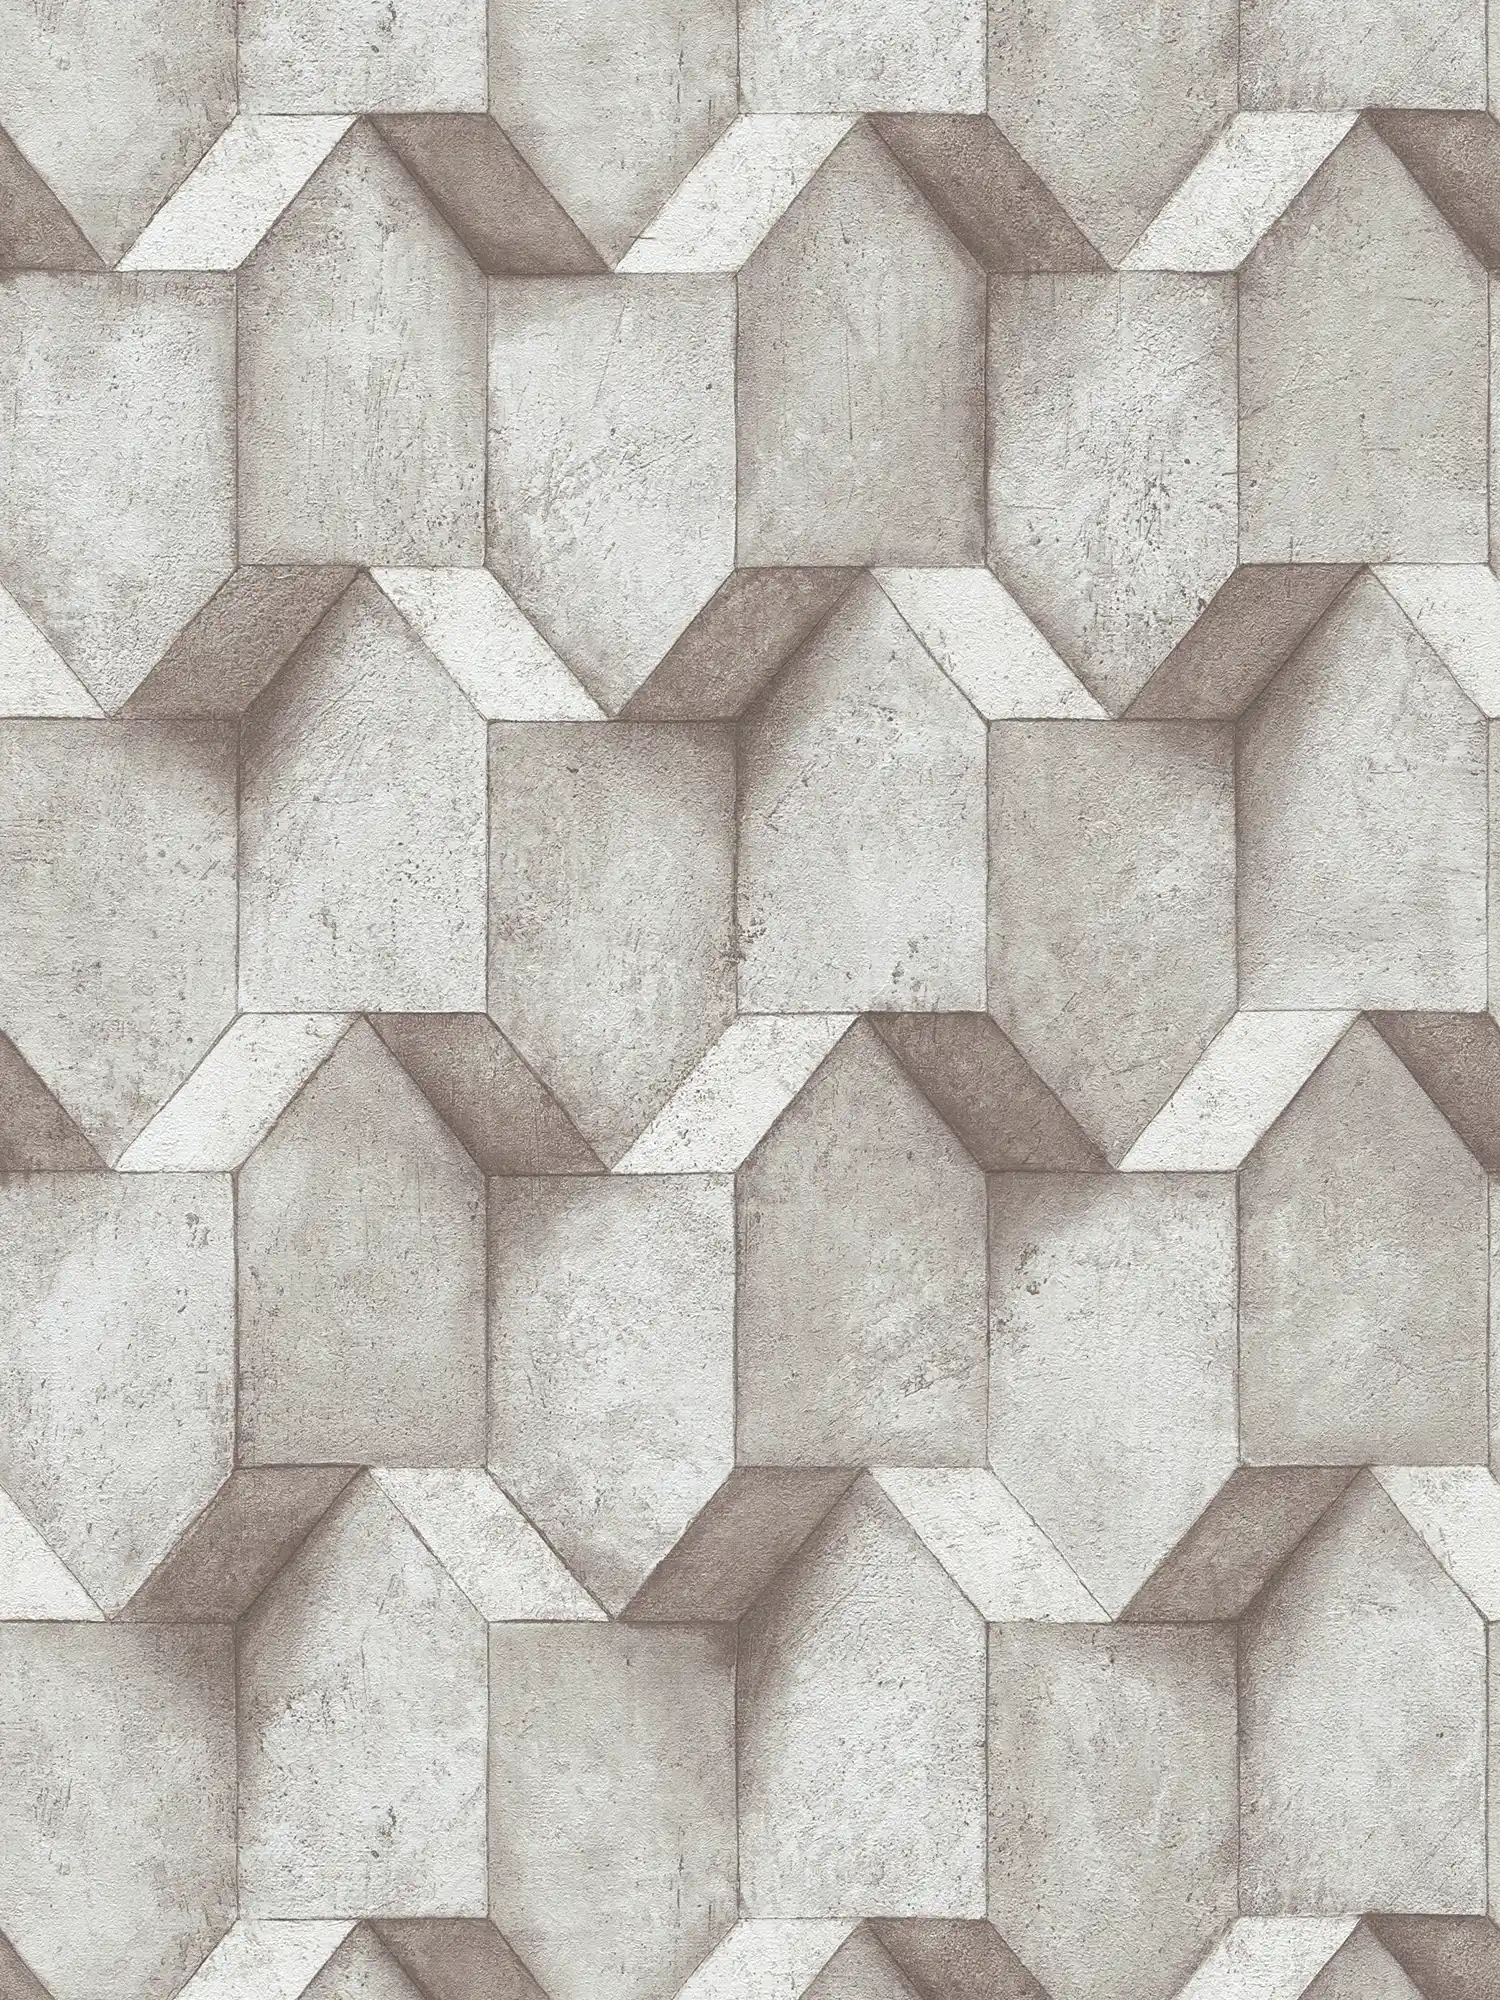 3D wallpaper greige with concrete look design - grey, beige
